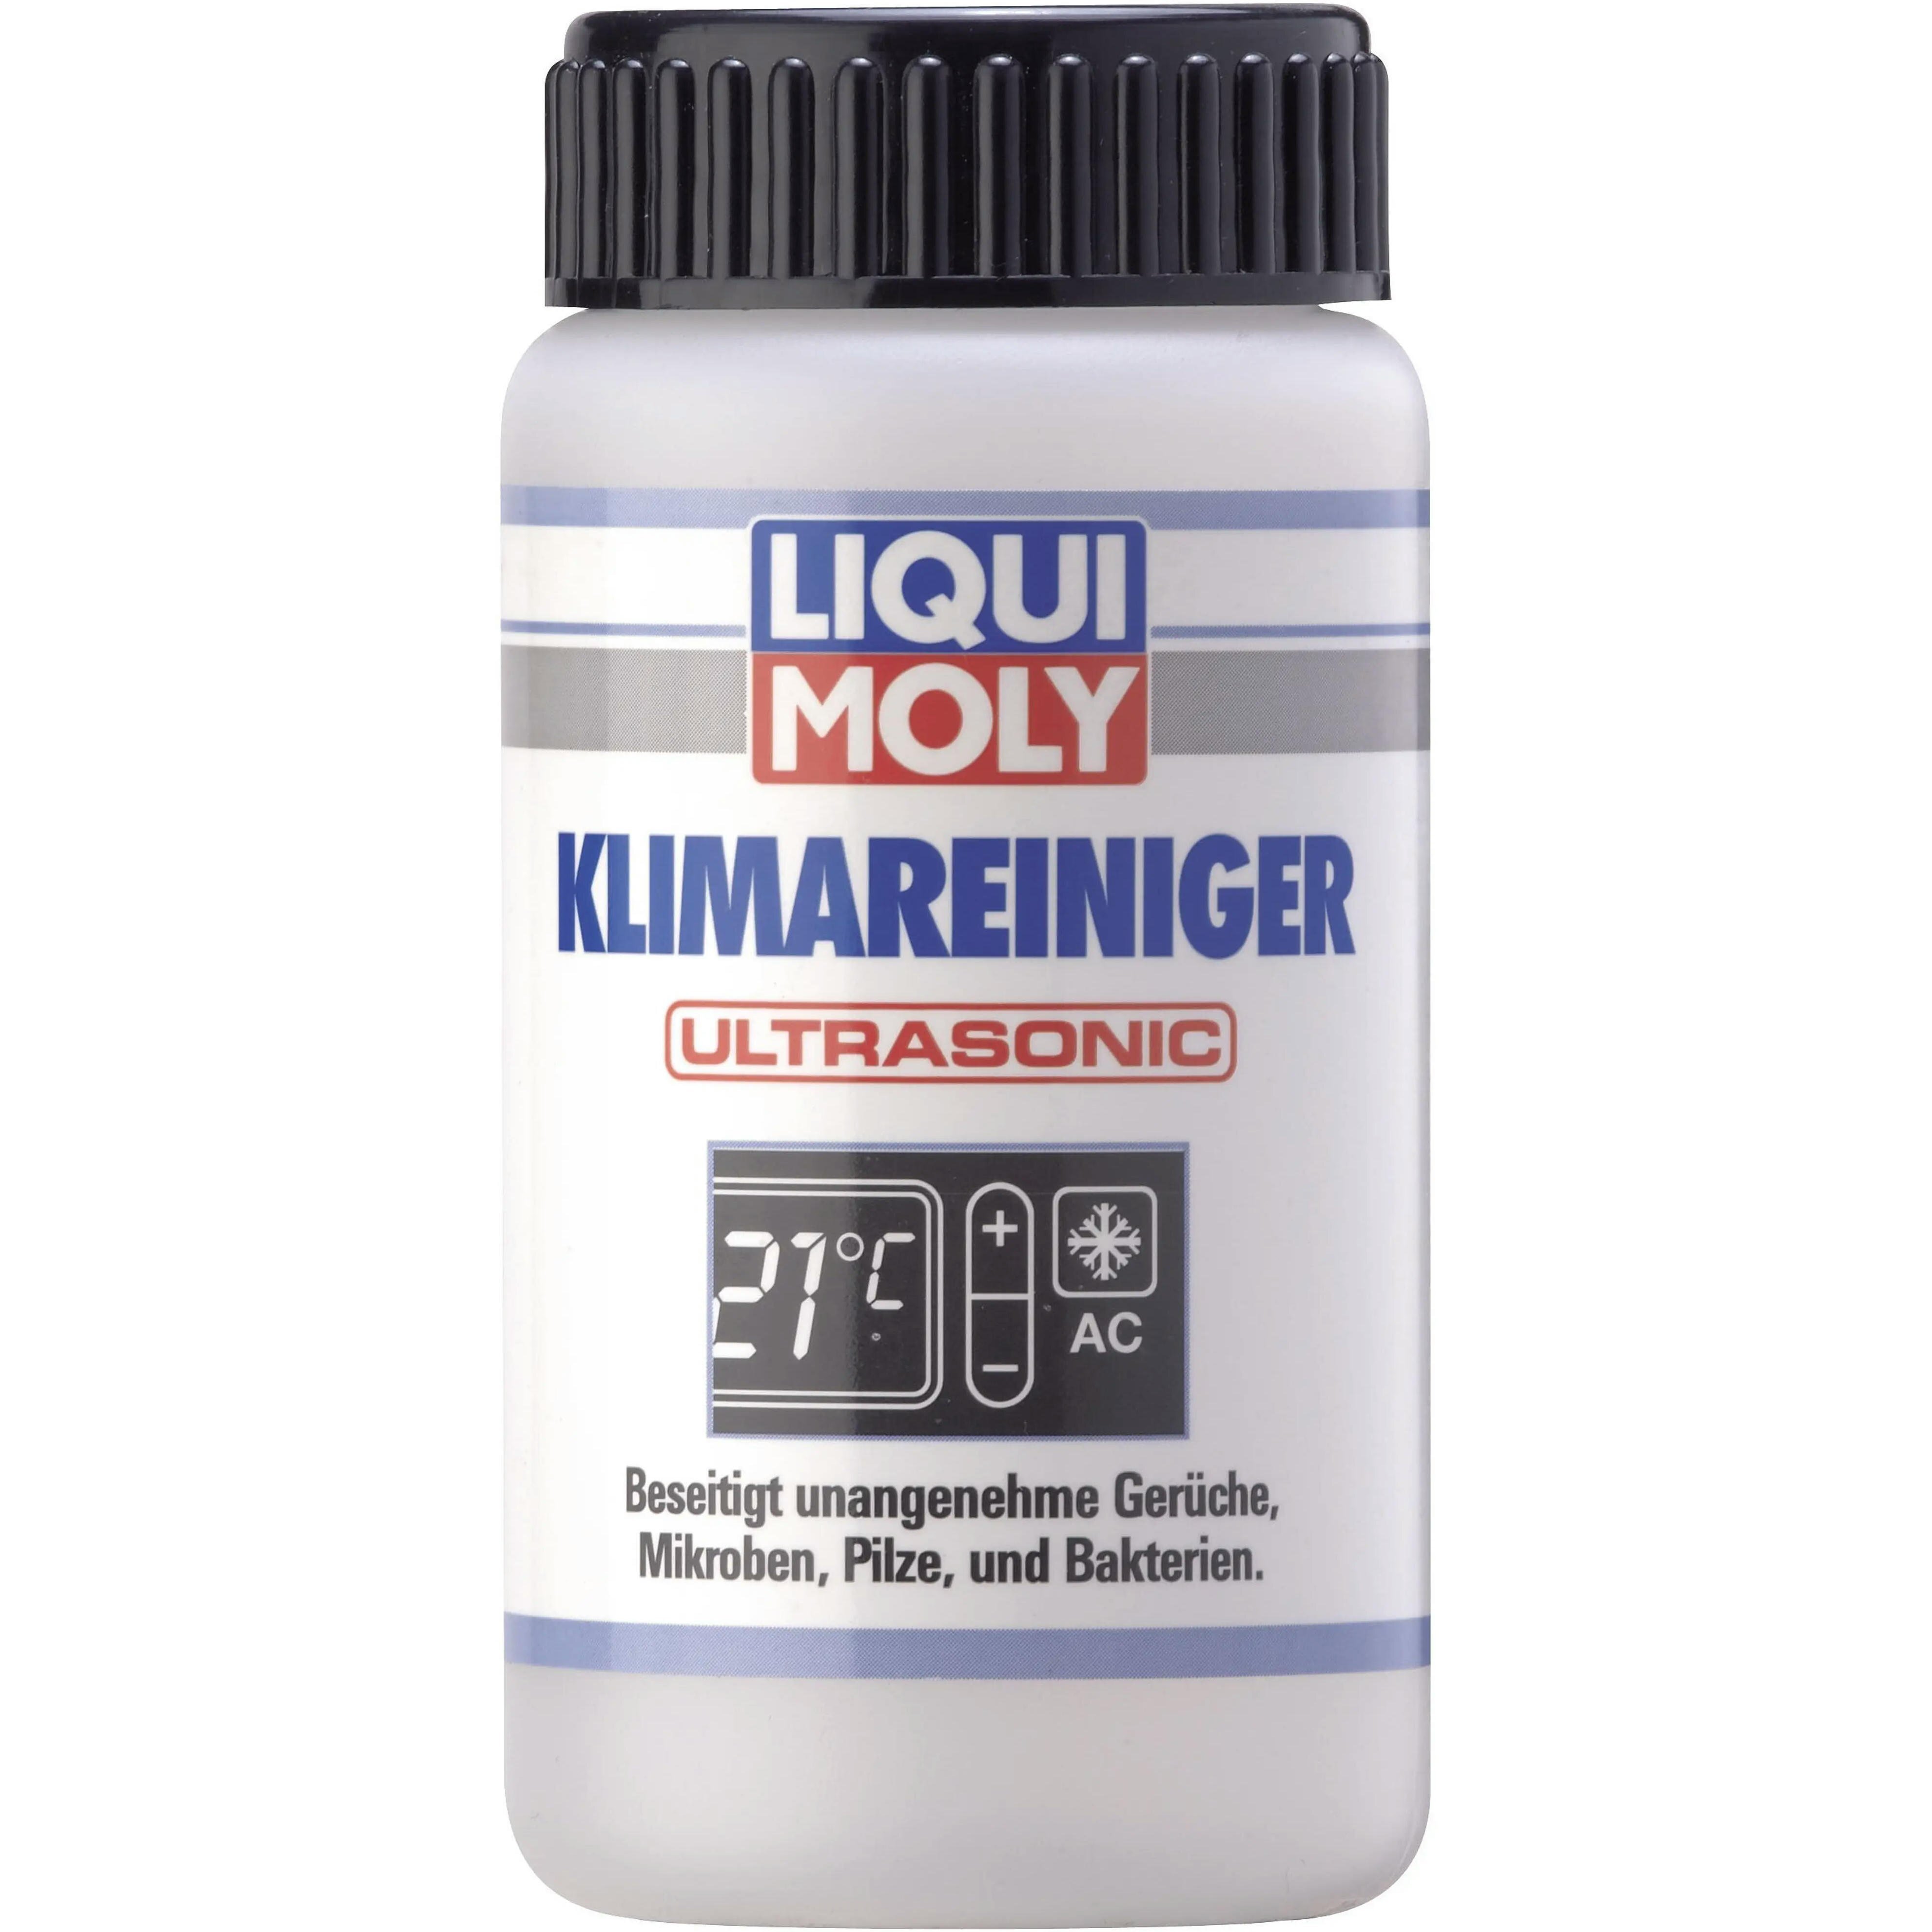 Очисник Liqui Moly для кондиціонера (для ультразвукових установок) Klimareiniger Ultrasonic 0,1л (4100420040795)фото1